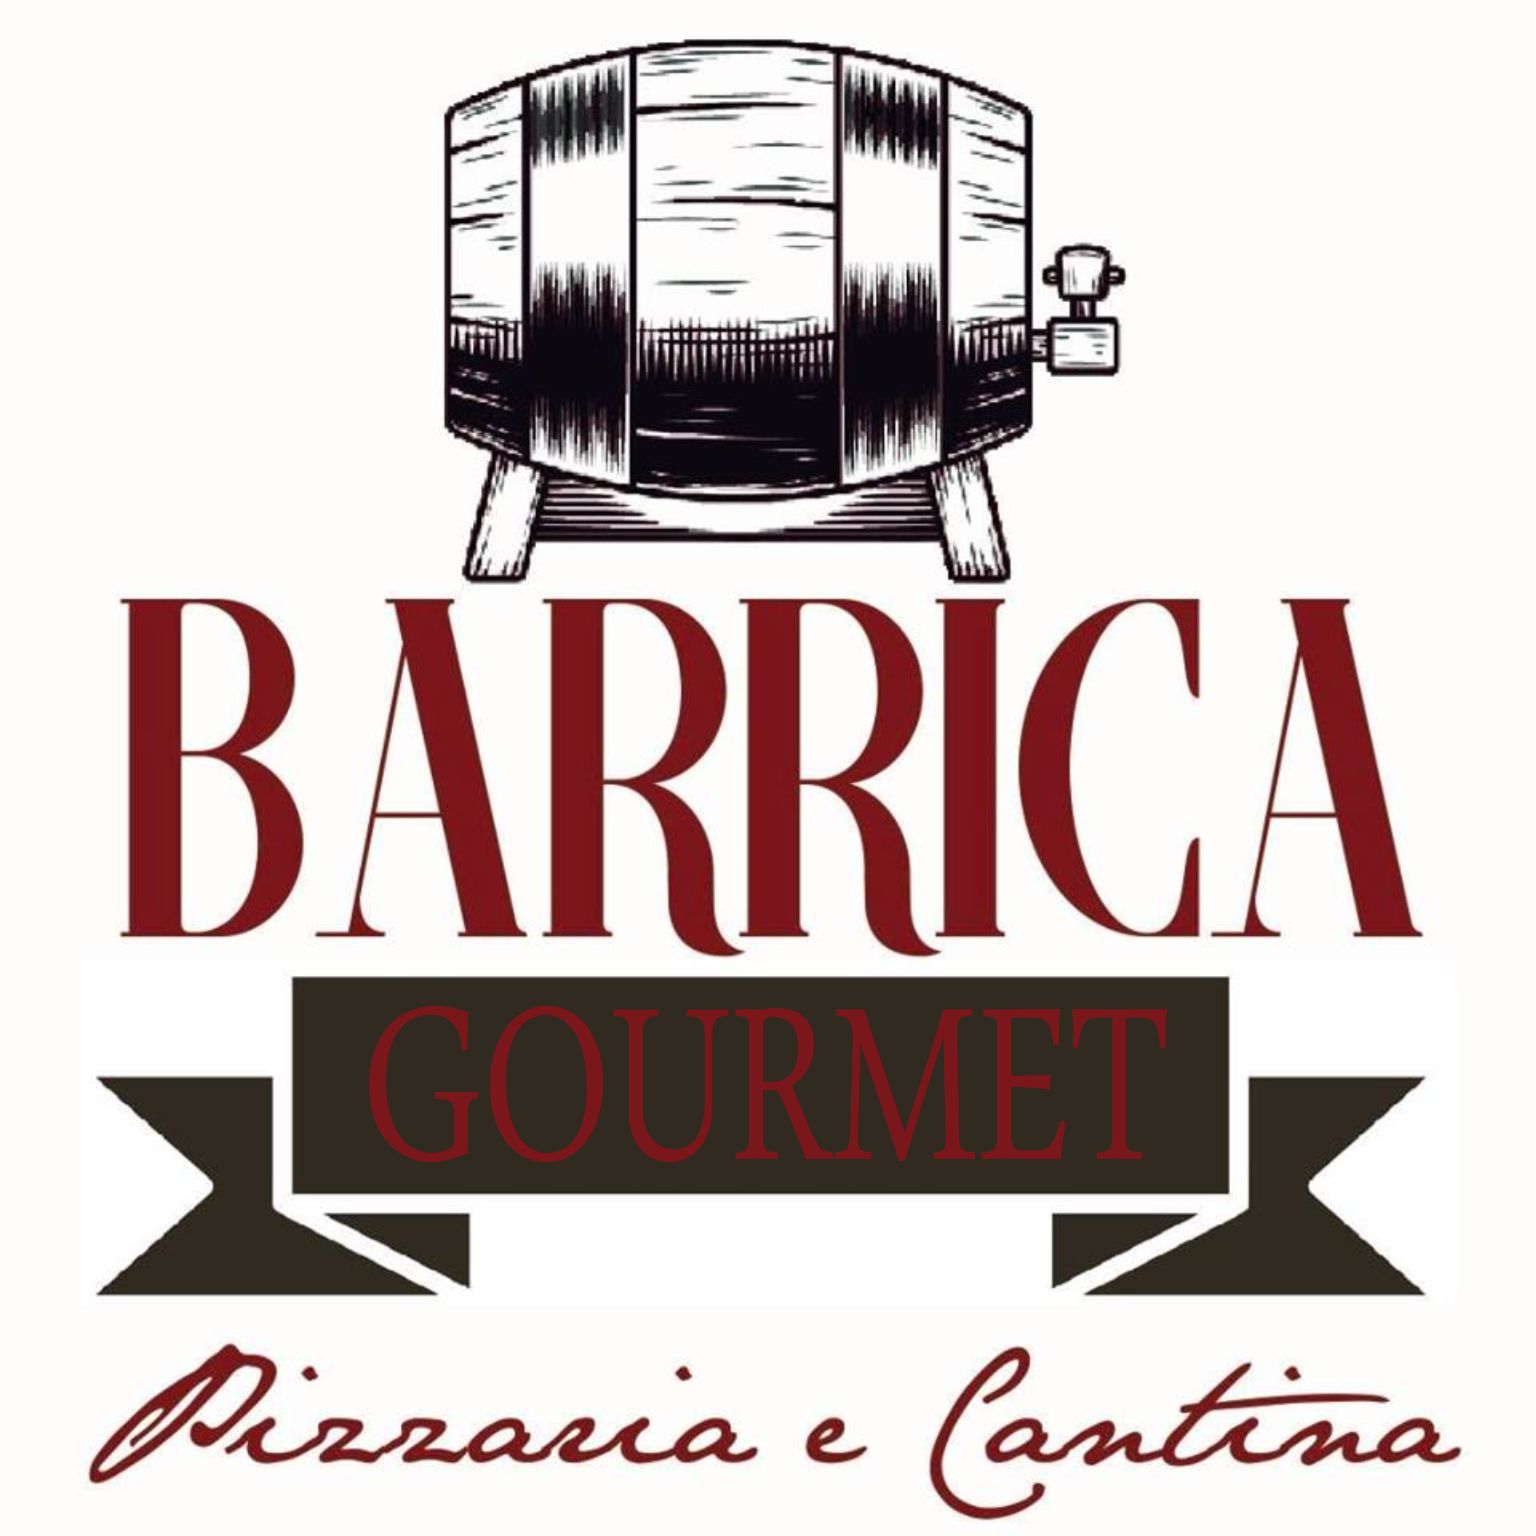 Barrica Gourmet